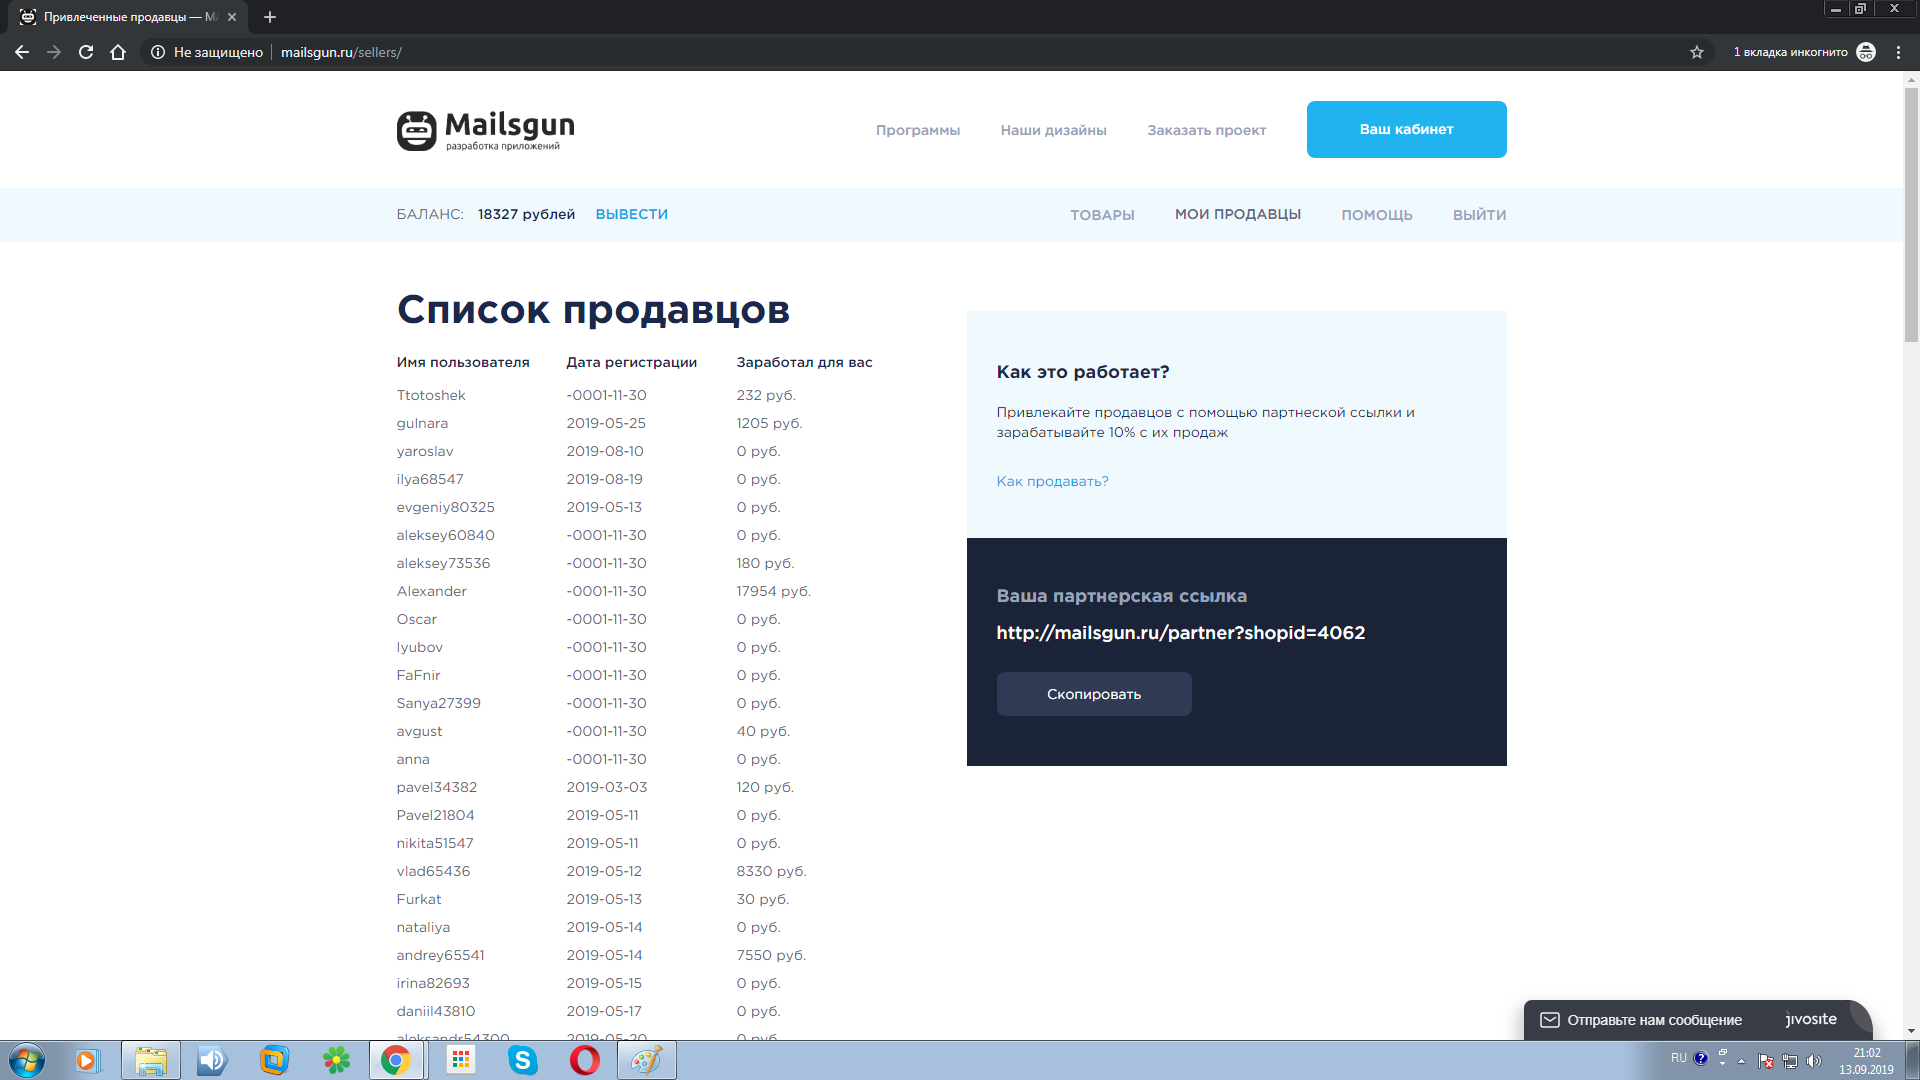 Партнерская сеть mailsgun.ru - привлеченные продавцы